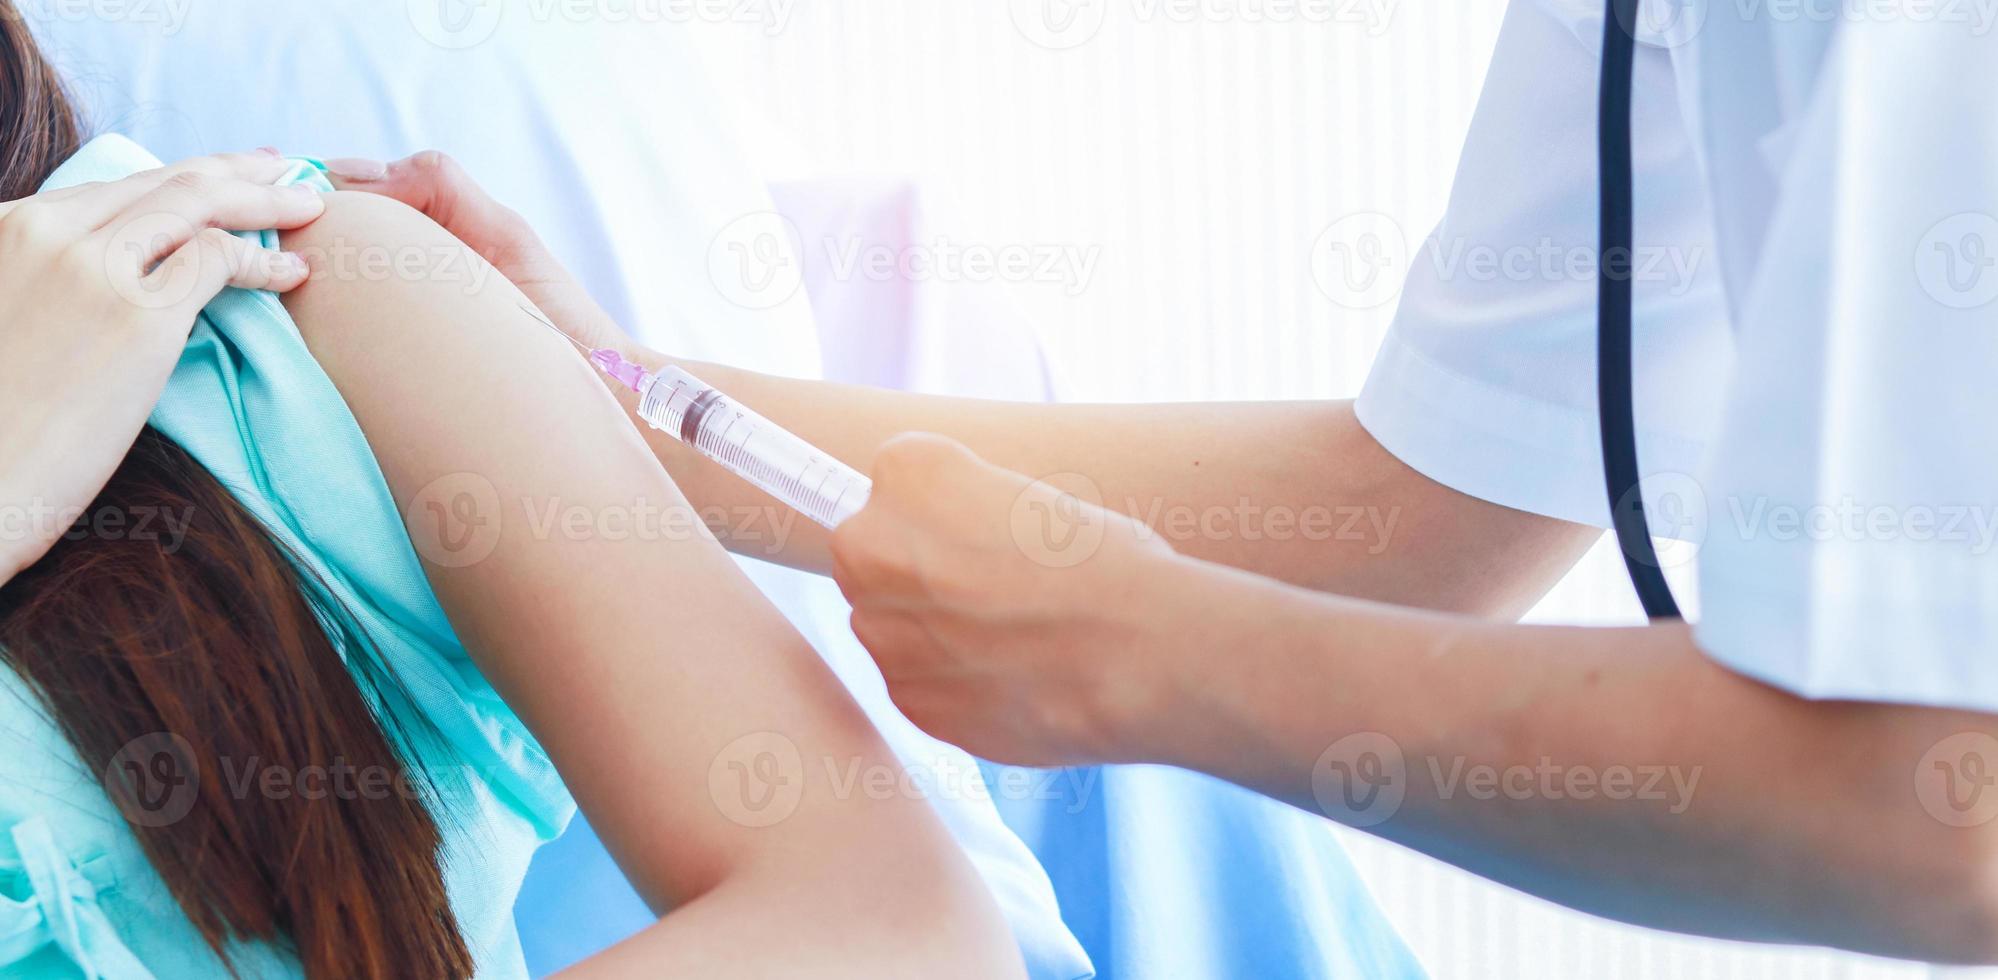 dottoressa che inietta una siringa in un paziente foto